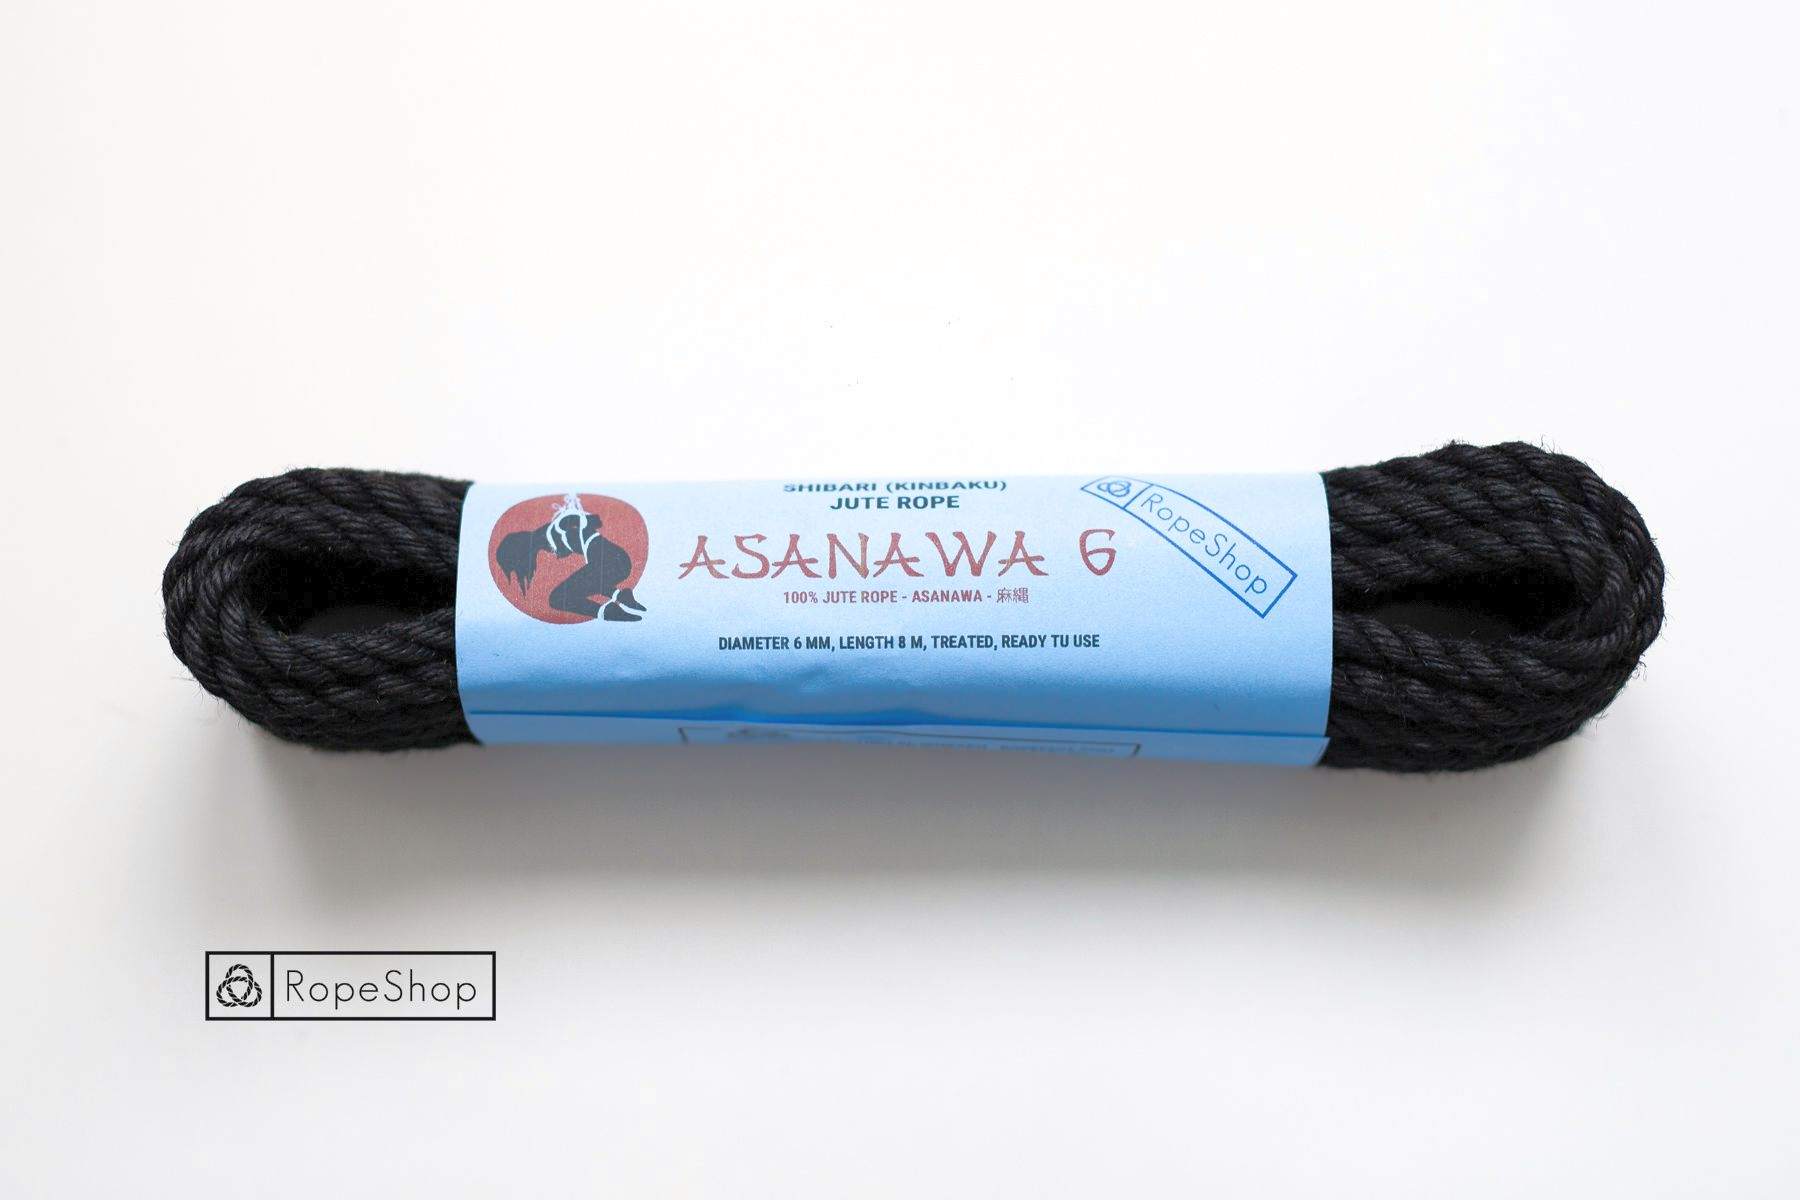 Веревка для шибари 6 мм. джутовая Asanawa 6 (Japan) обработанная, черная